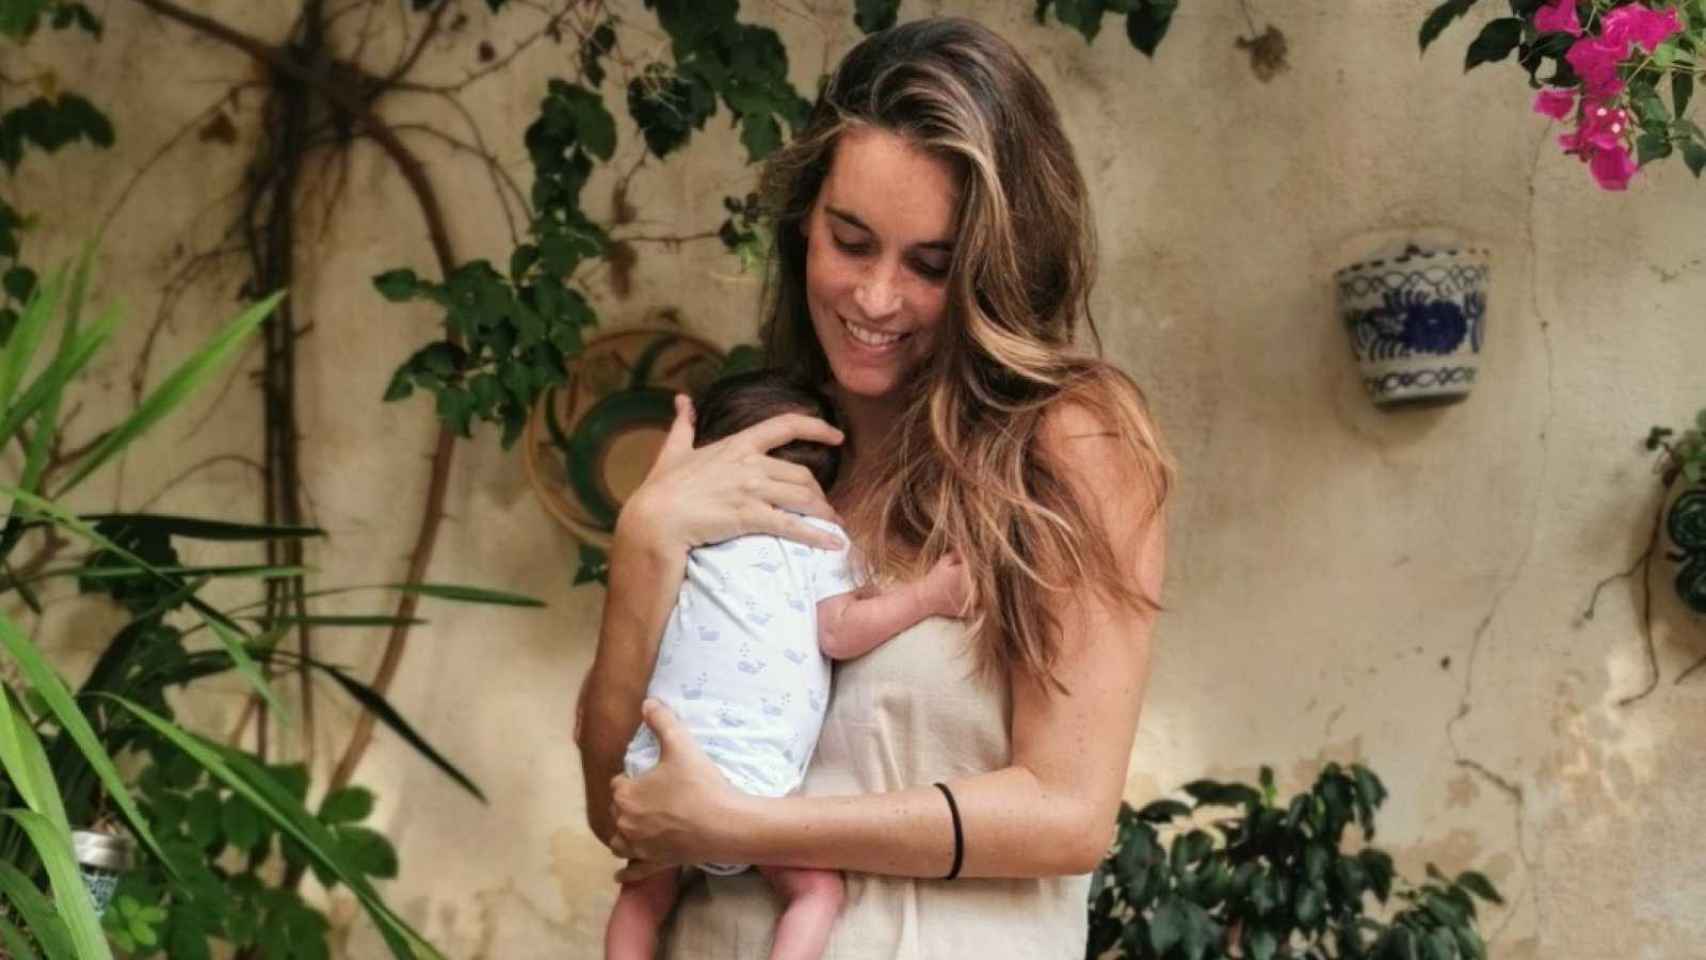 La deportista de élite Ona Carbonell con su hijo Kai en brazos / RTVE